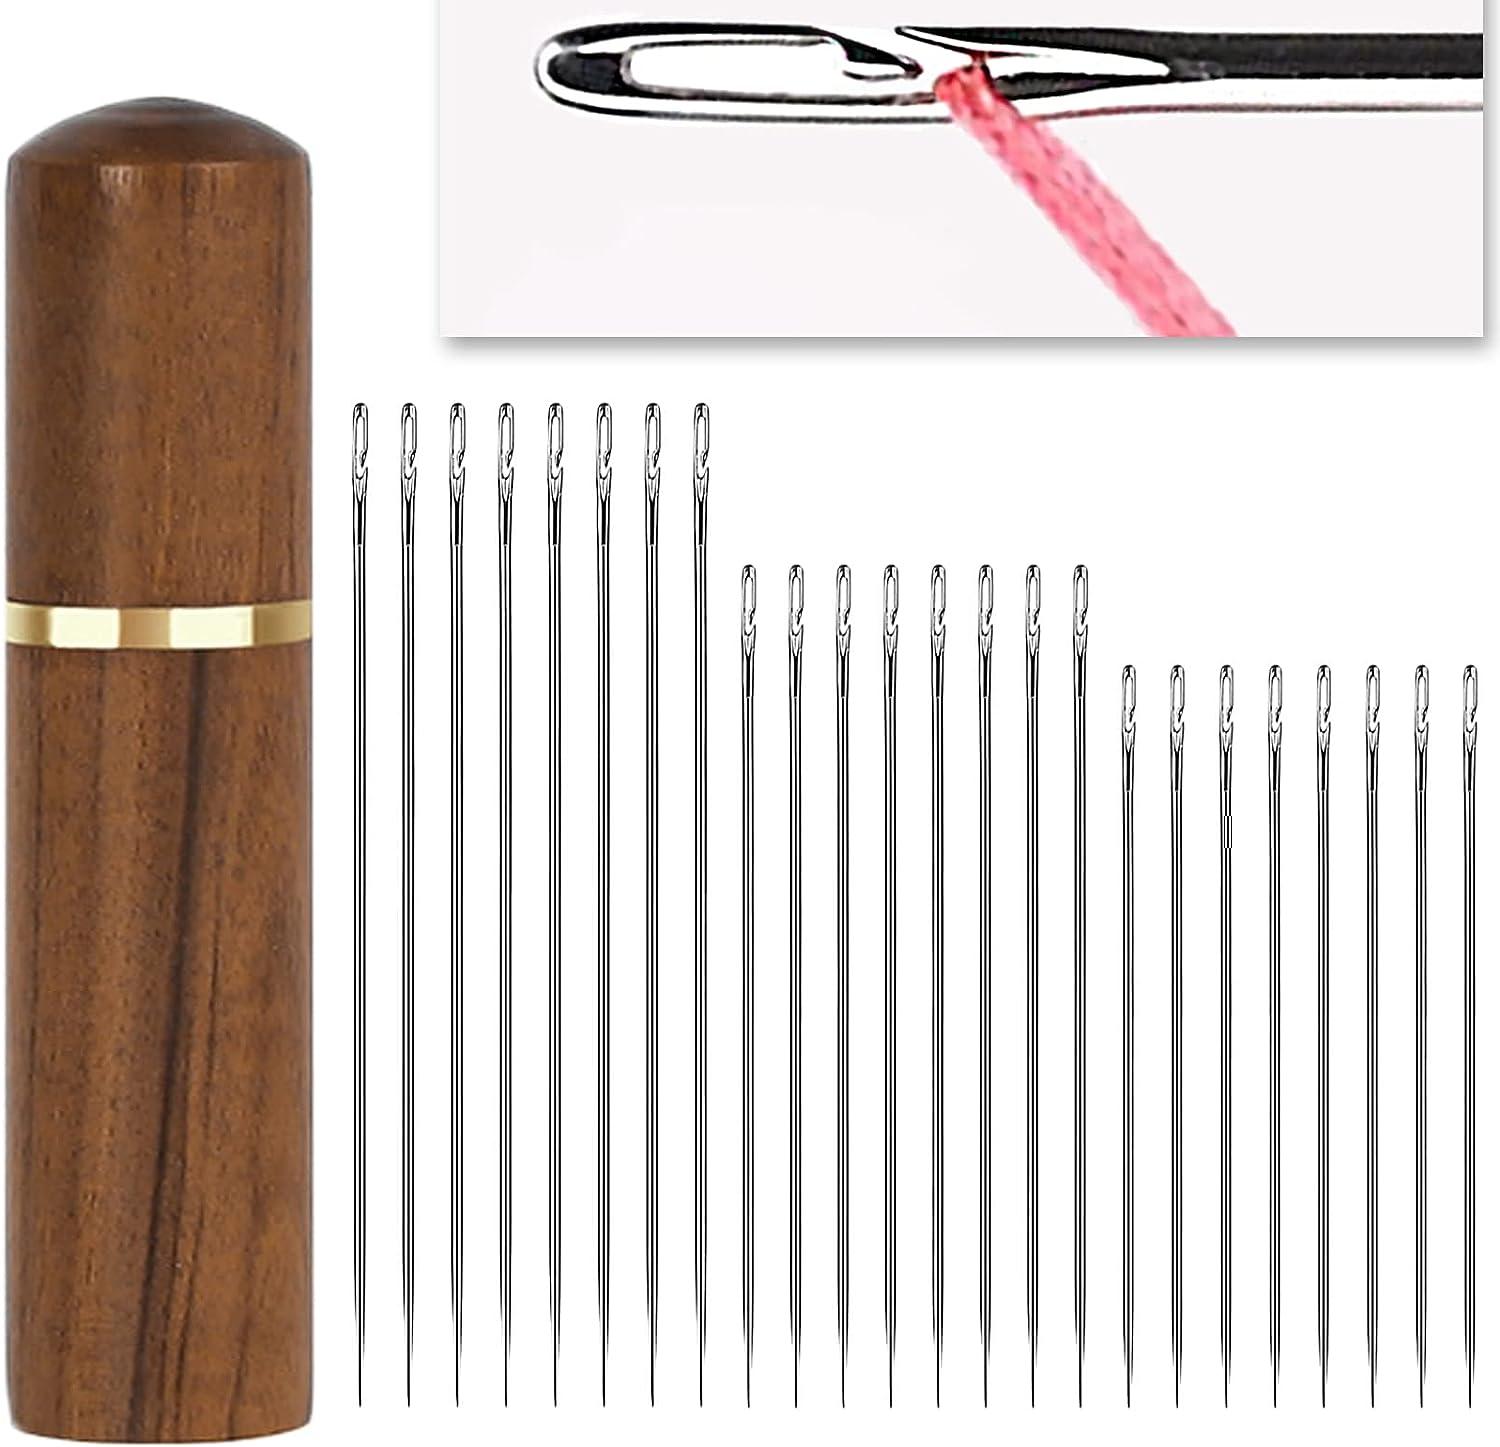  FOMIYES 15 Pcs Wooden Needle Threader Wire Hair